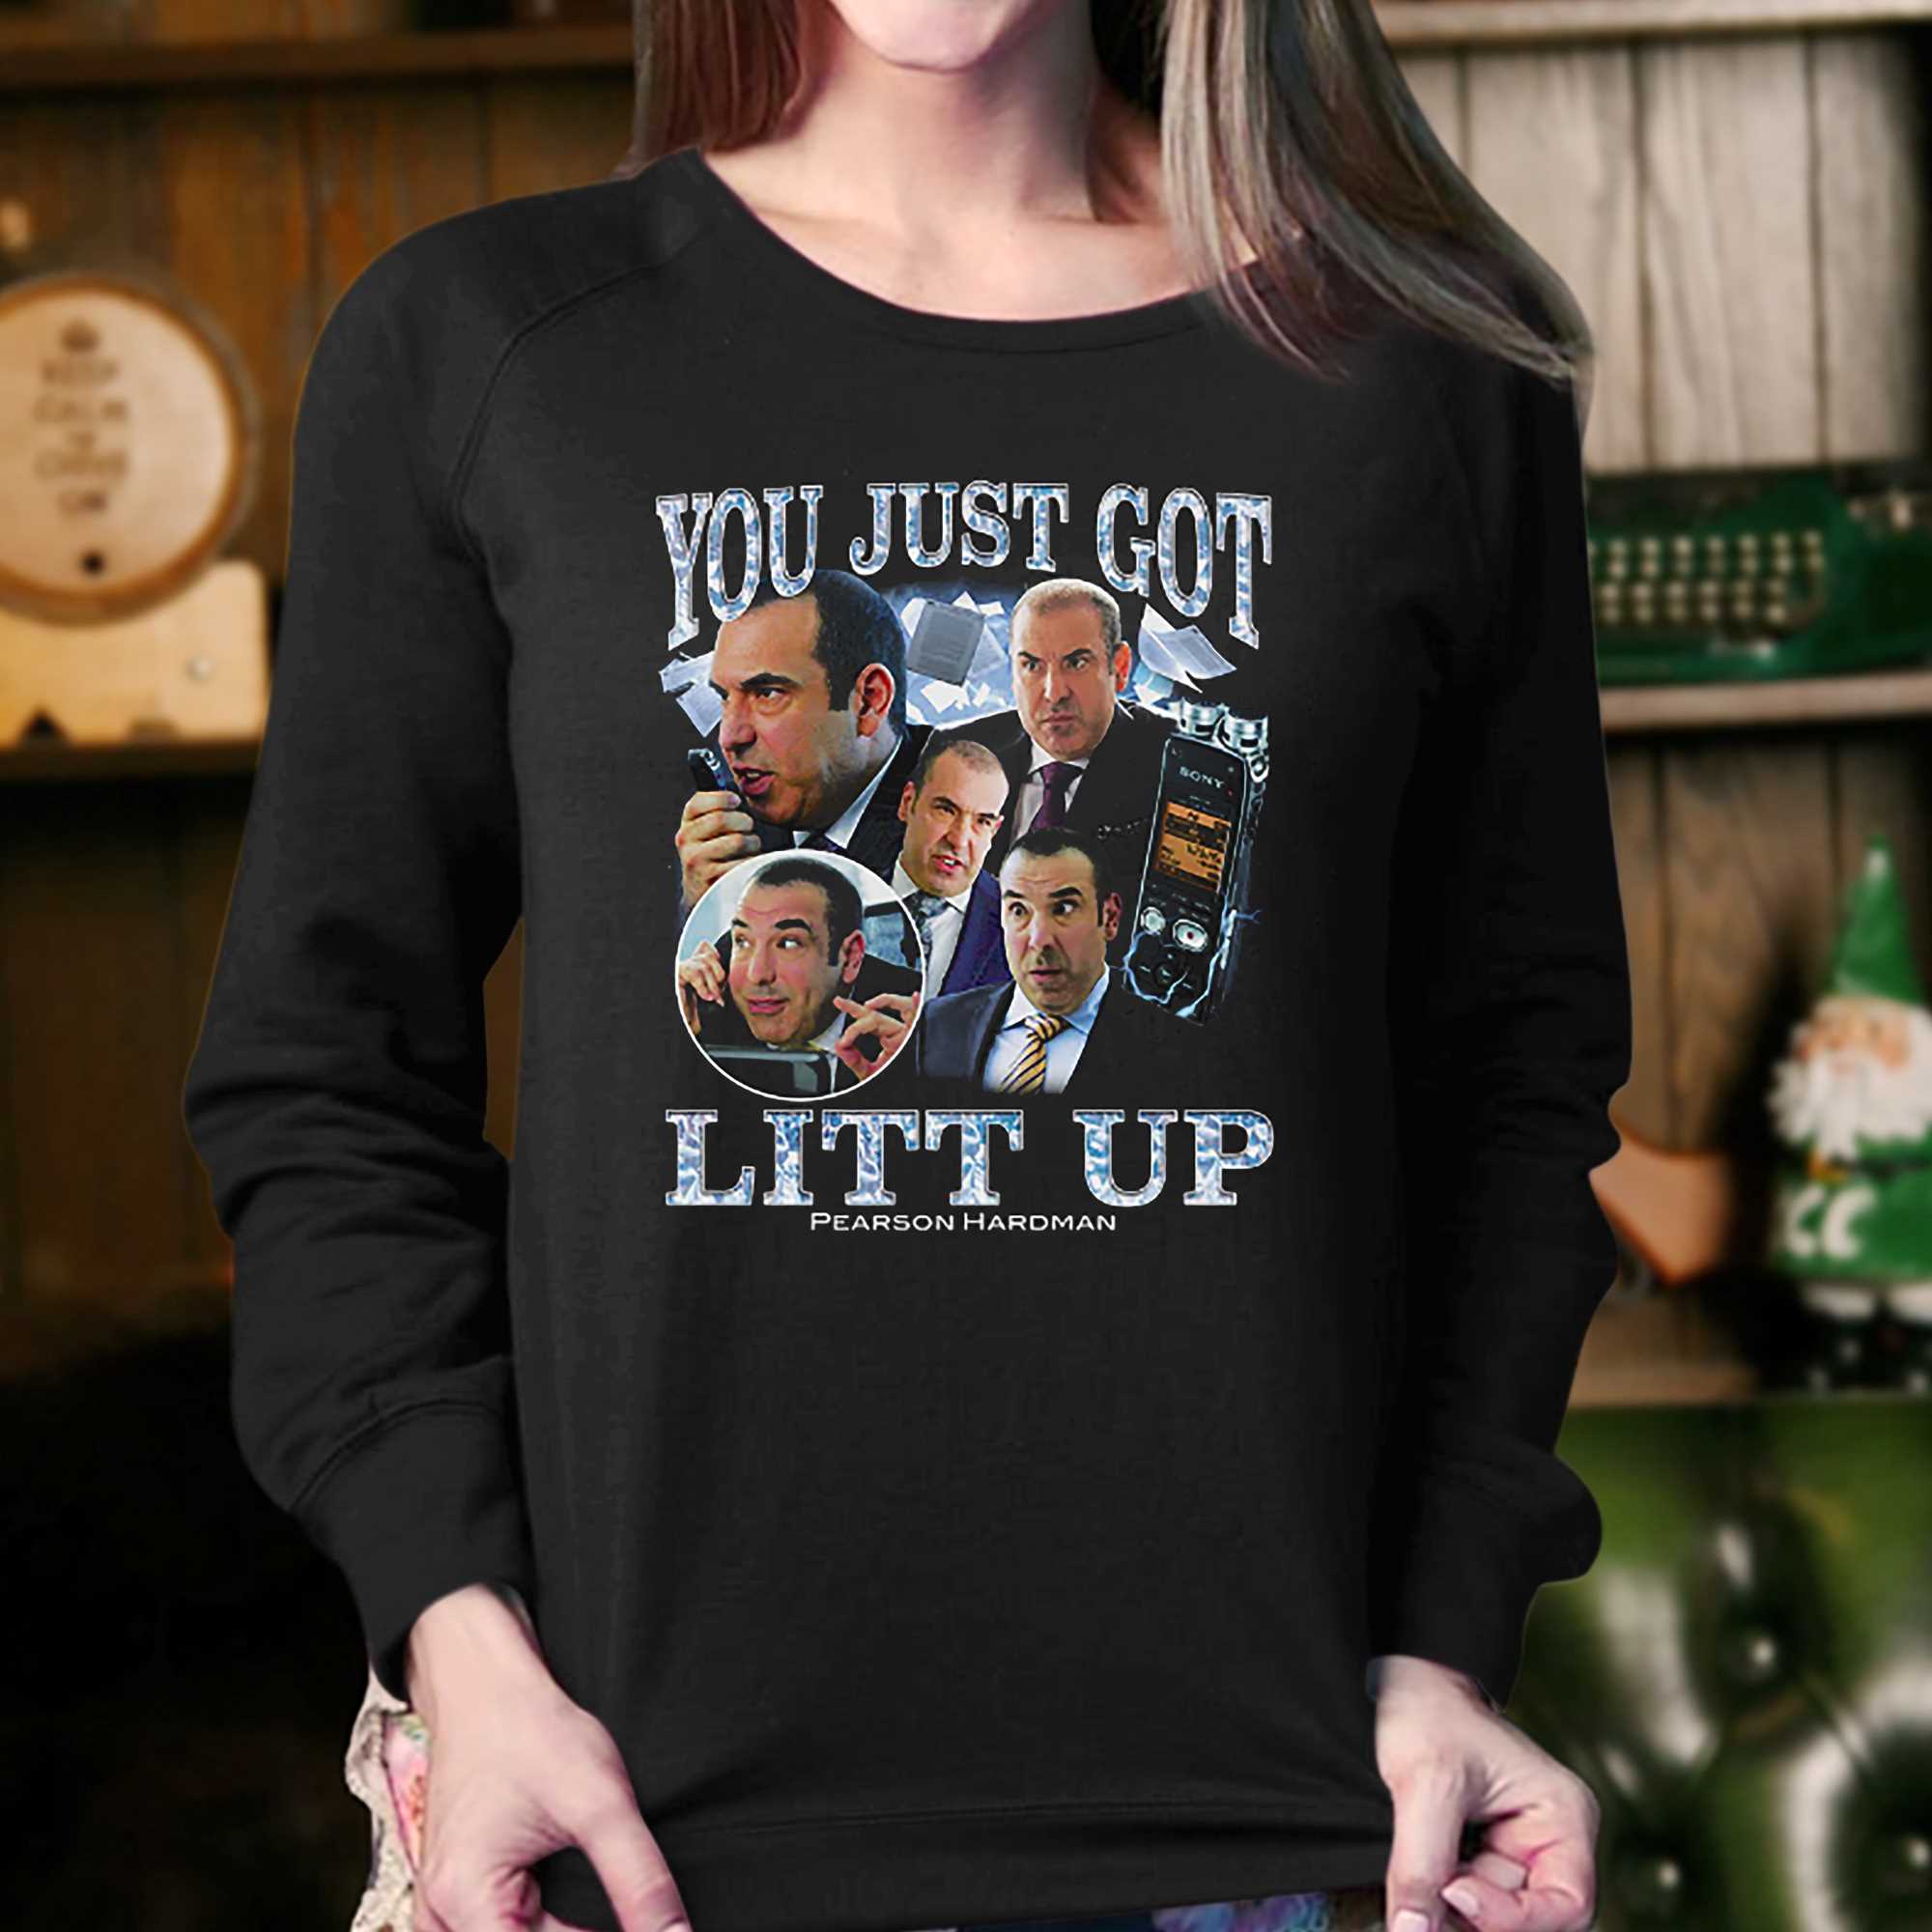 You Just Got Litt Up! - Law - Long Sleeve T-Shirt